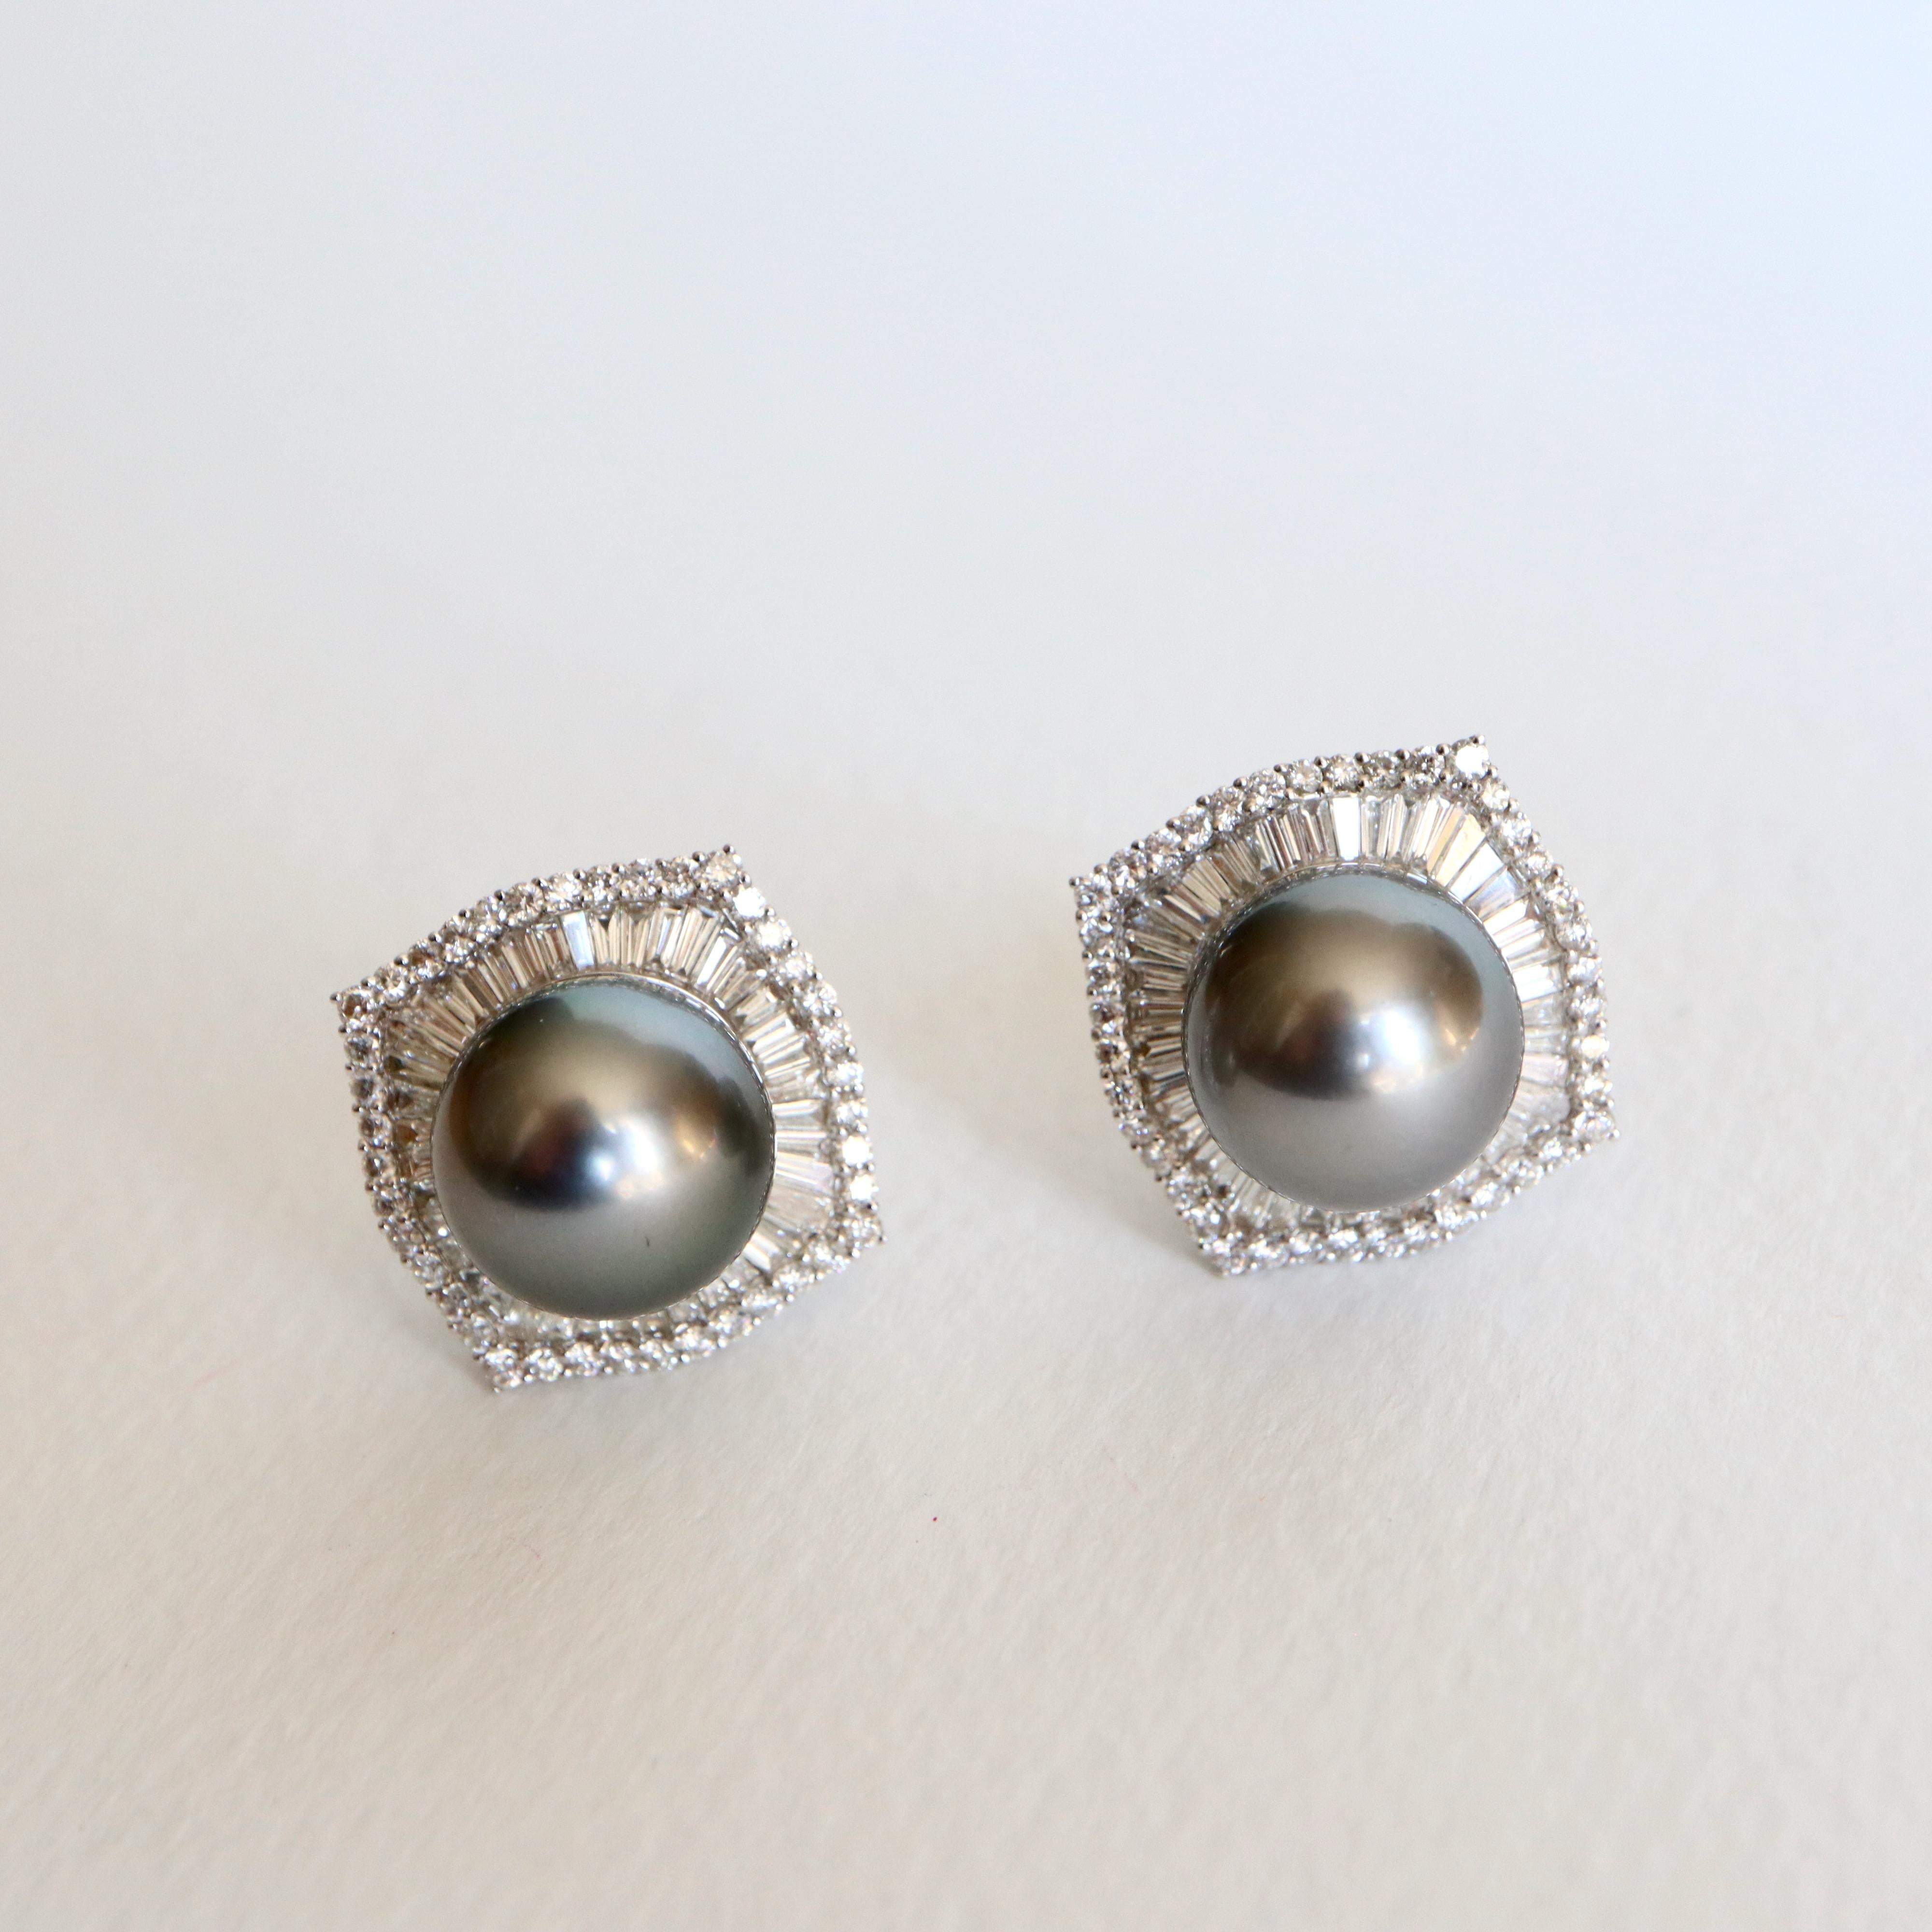 Ohrringe aus 18 Karat Weißgold, Diamanten und grauen Tahiti-Perlen. Die Perlen sind von Baguette- und runden Diamanten umgeben  die ein einigermaßen quadratisches geometrisches Muster bilden.
Sehr schöne Goldarbeiten auf der Rückseite der